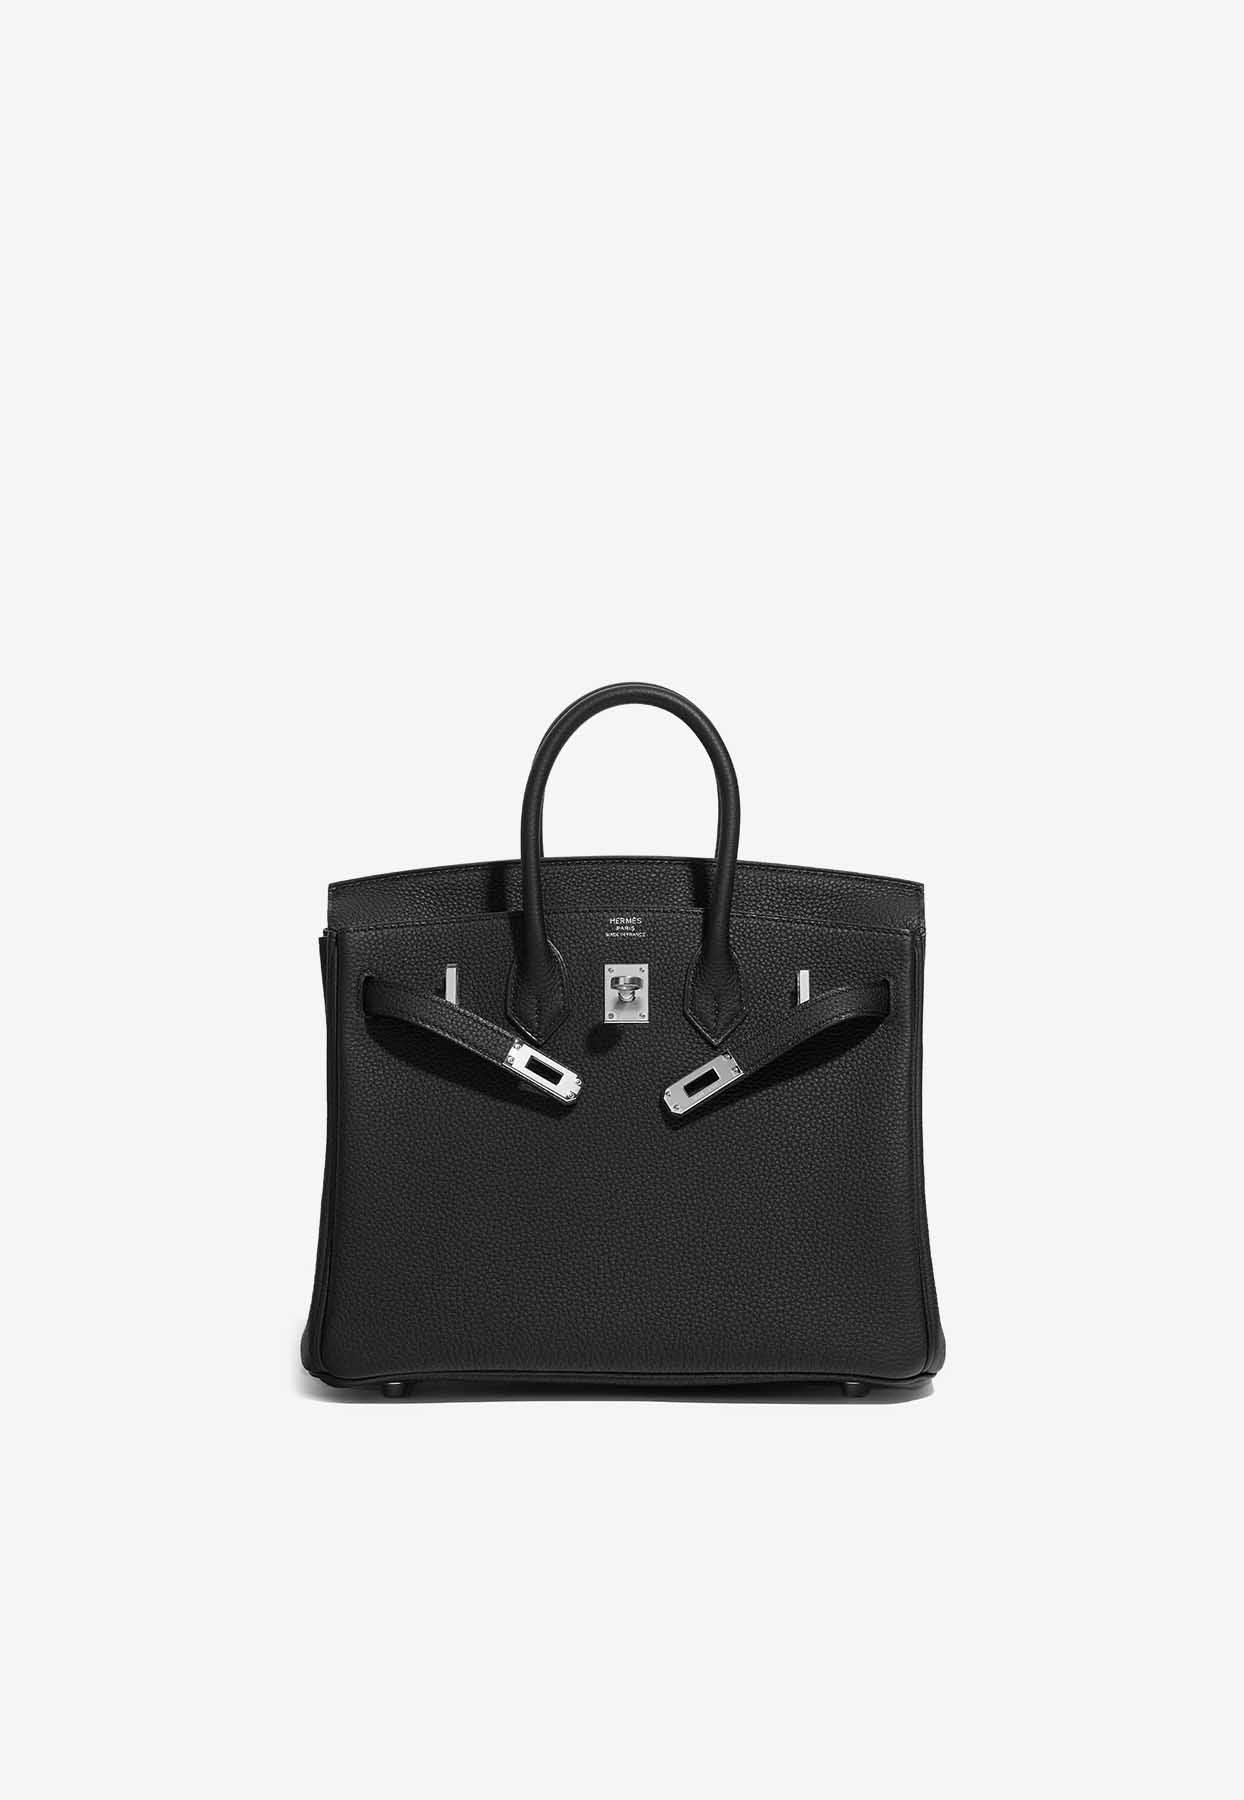 Hermès Birkin 25 Black Togo Leather With Palladium Hardware | Lyst